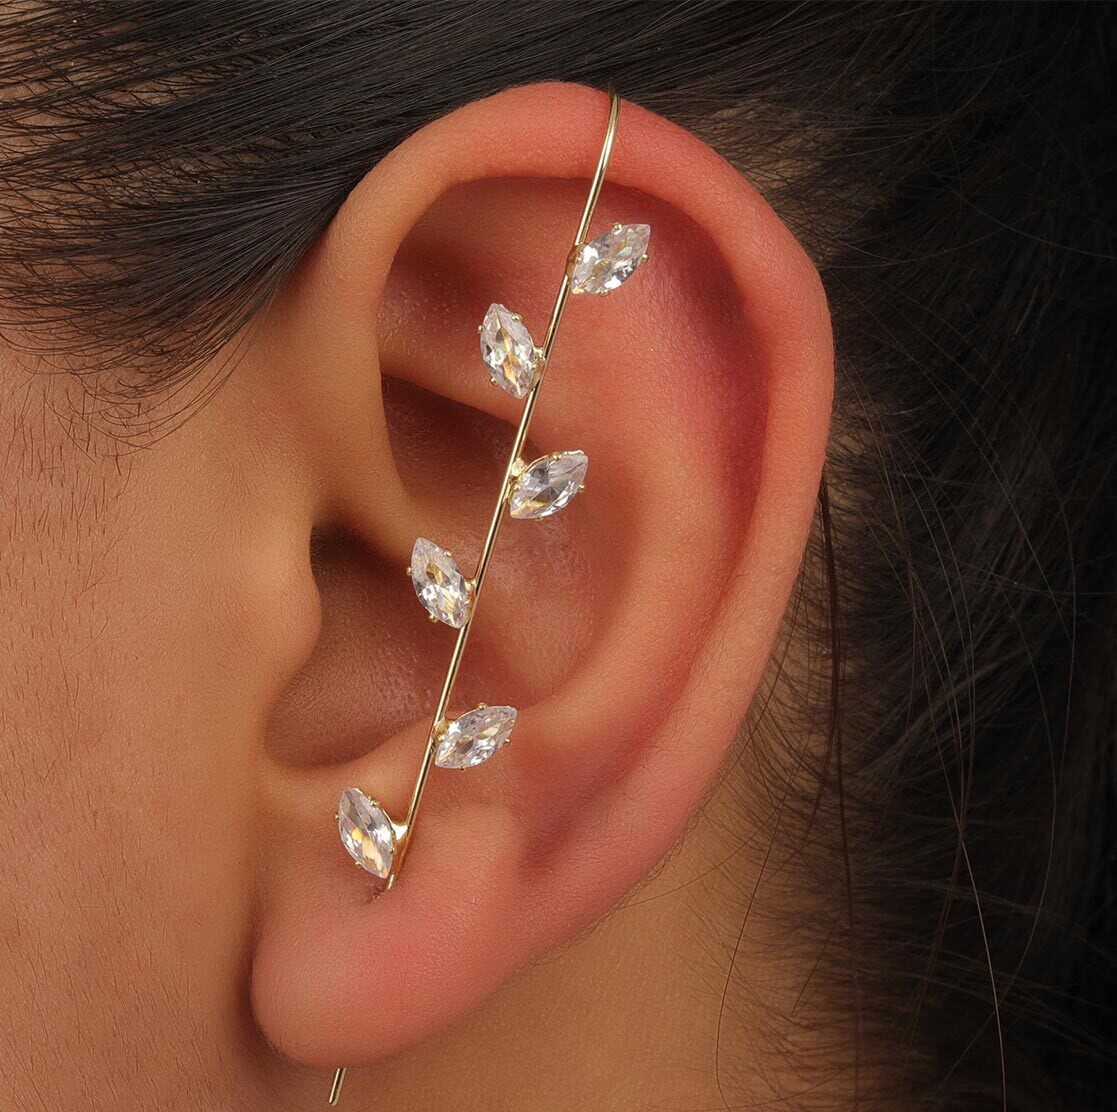 22KT Gold CZ Stone Ear Cuff Earring